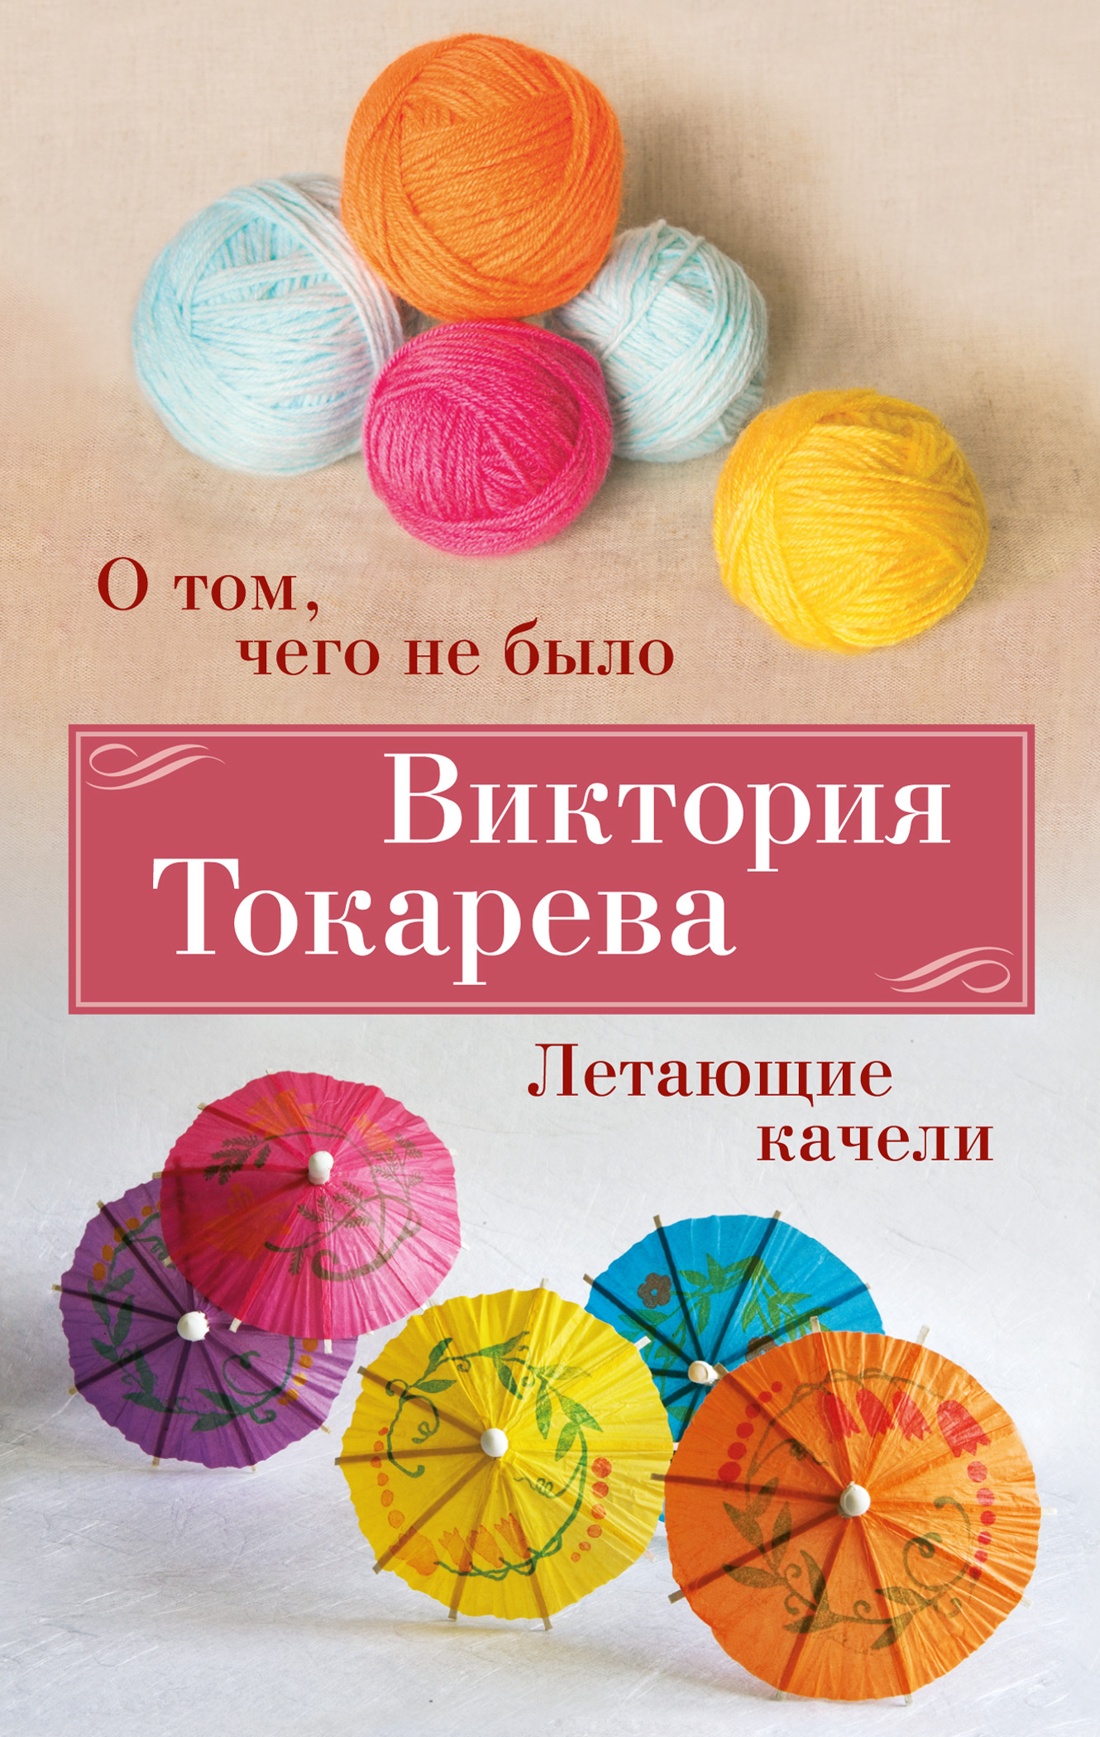 Купить книгу «О том, чего не было. Летающие качели», Виктория Токарева |  Издательство «Азбука», ISBN: 978-5-389-24612-6